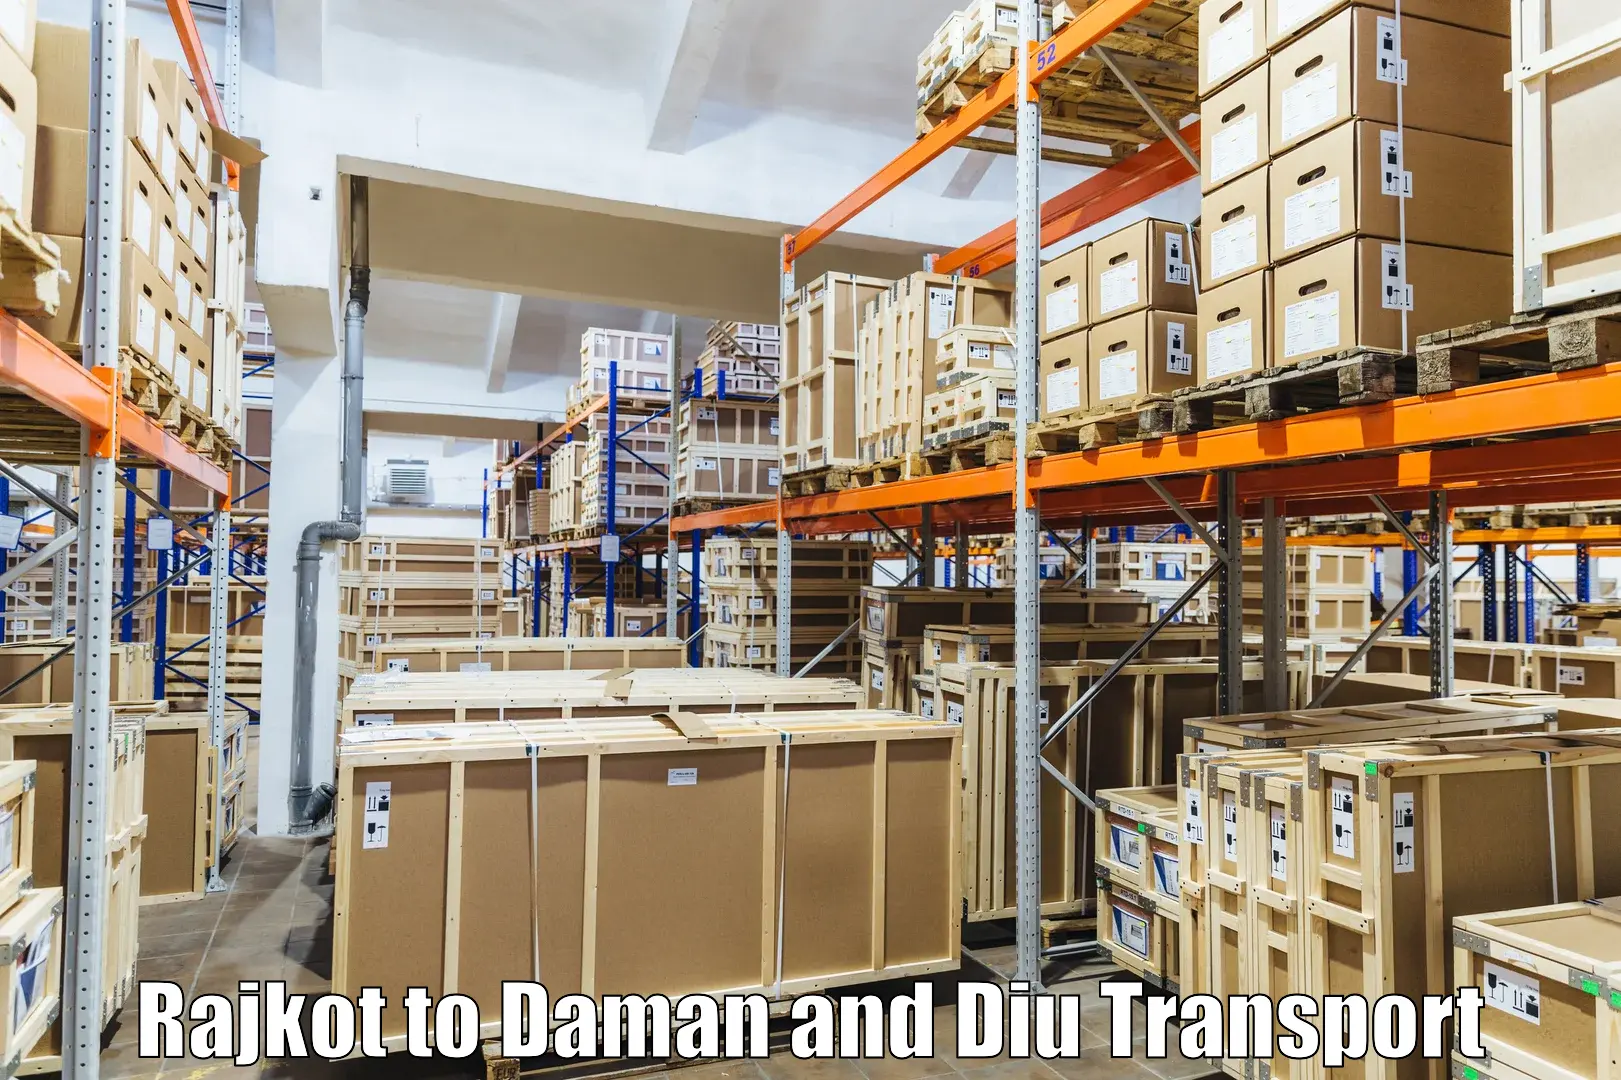 Lorry transport service Rajkot to Daman and Diu